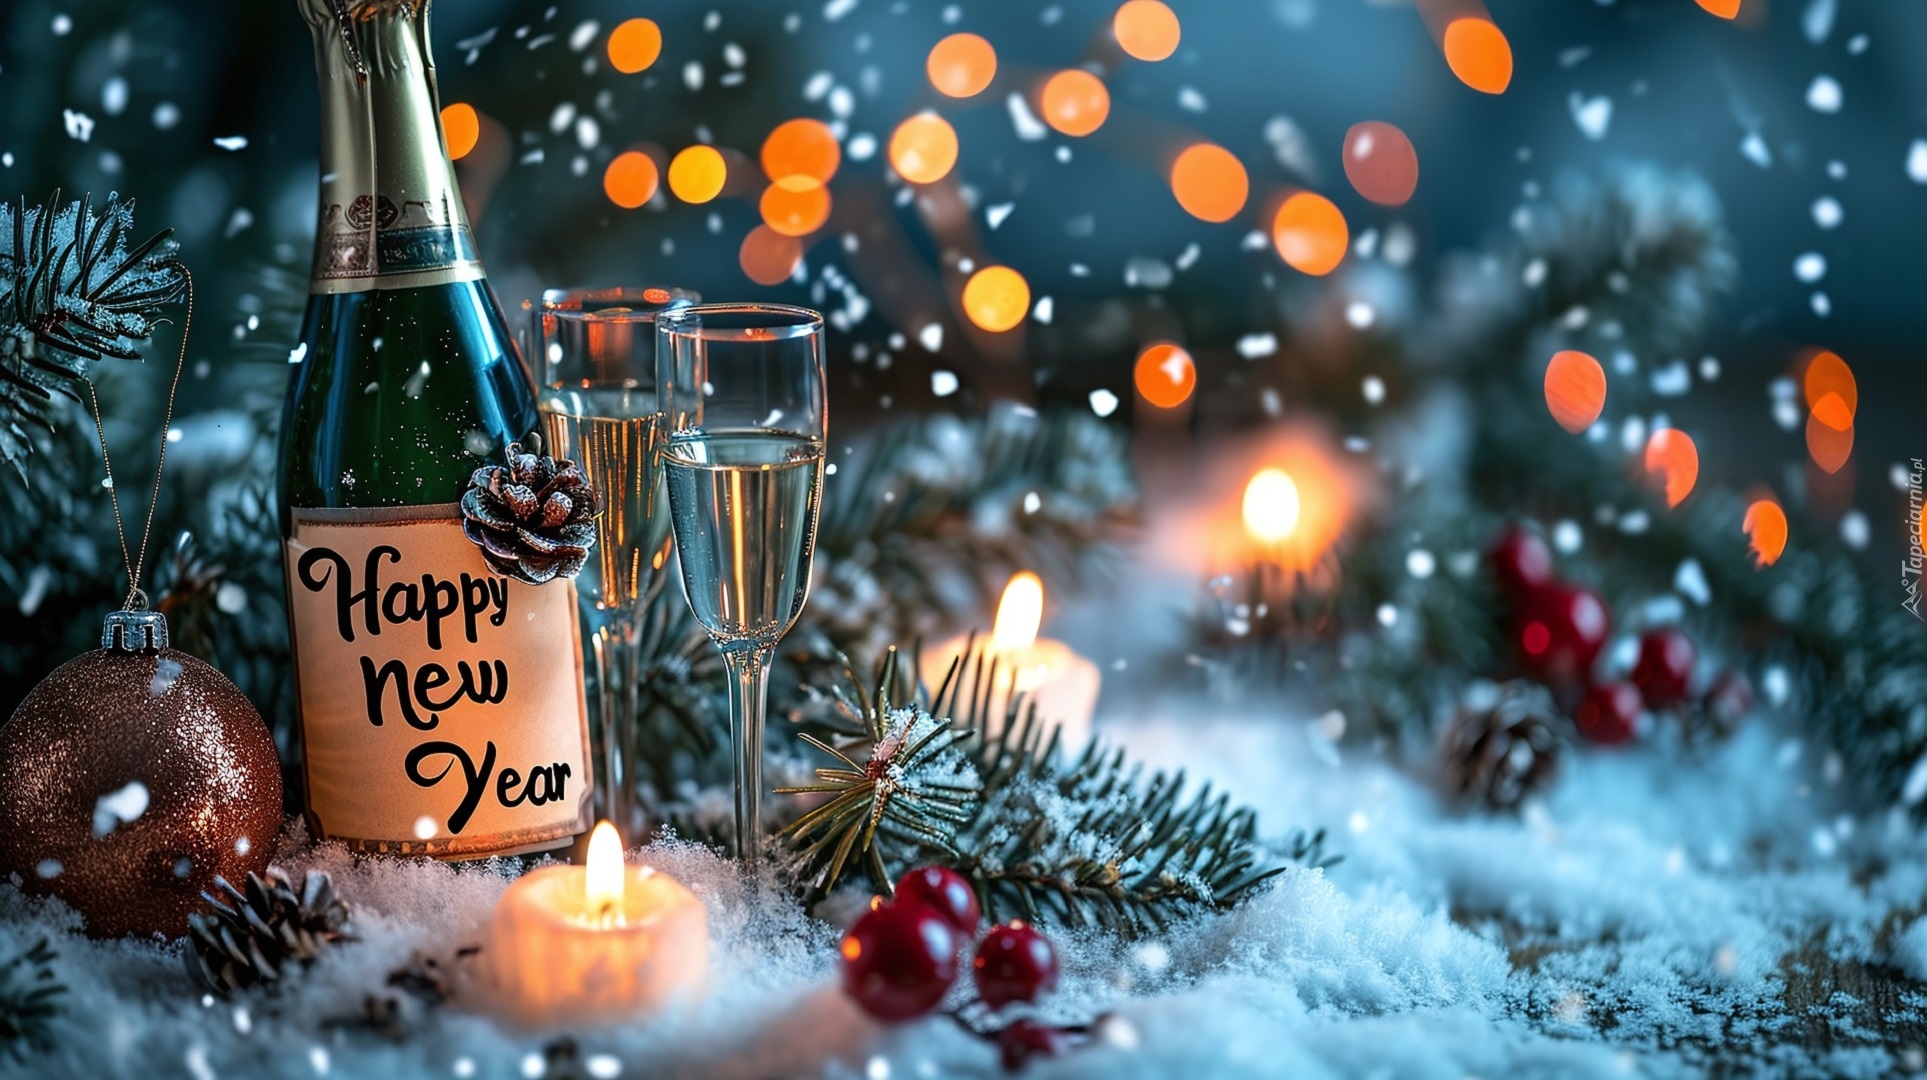 tapeta-kieliszki-i-swiece-na-sniegu-obok-butelki-szampana-z-napisem-happy-new-year.jpg